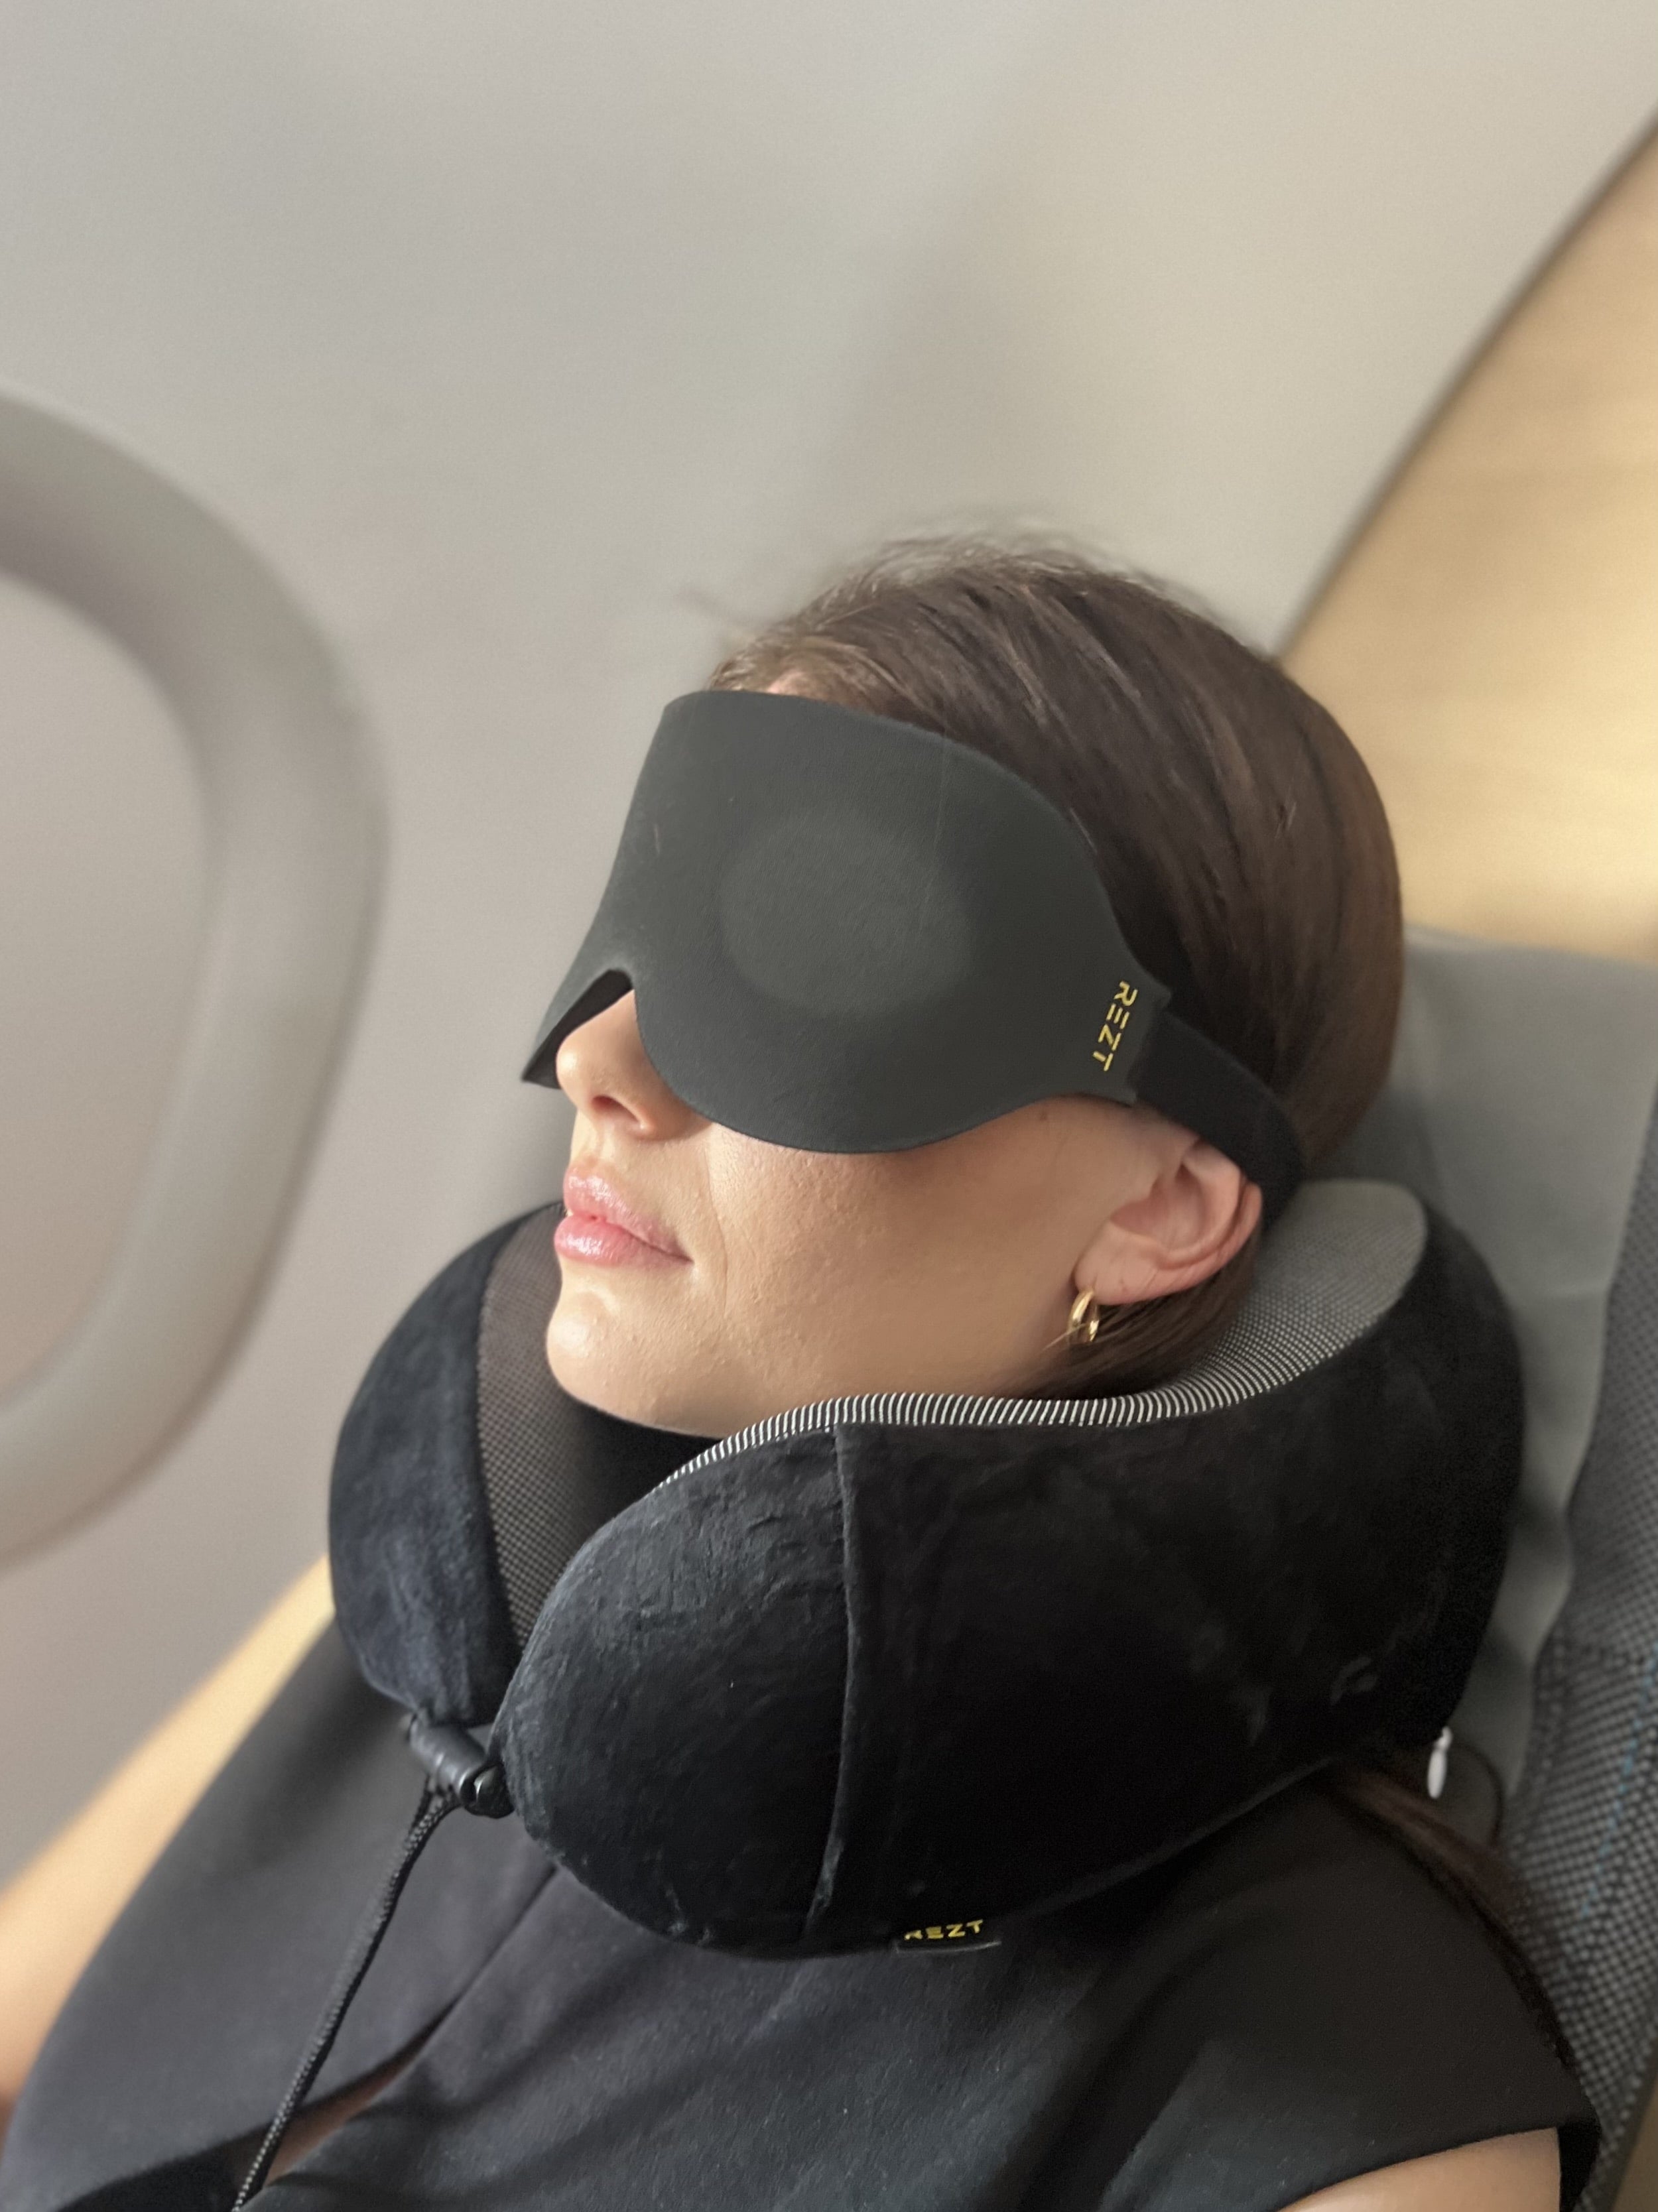 Avslappende reise med en komfortabel nakkepute - for en behagelig flytur